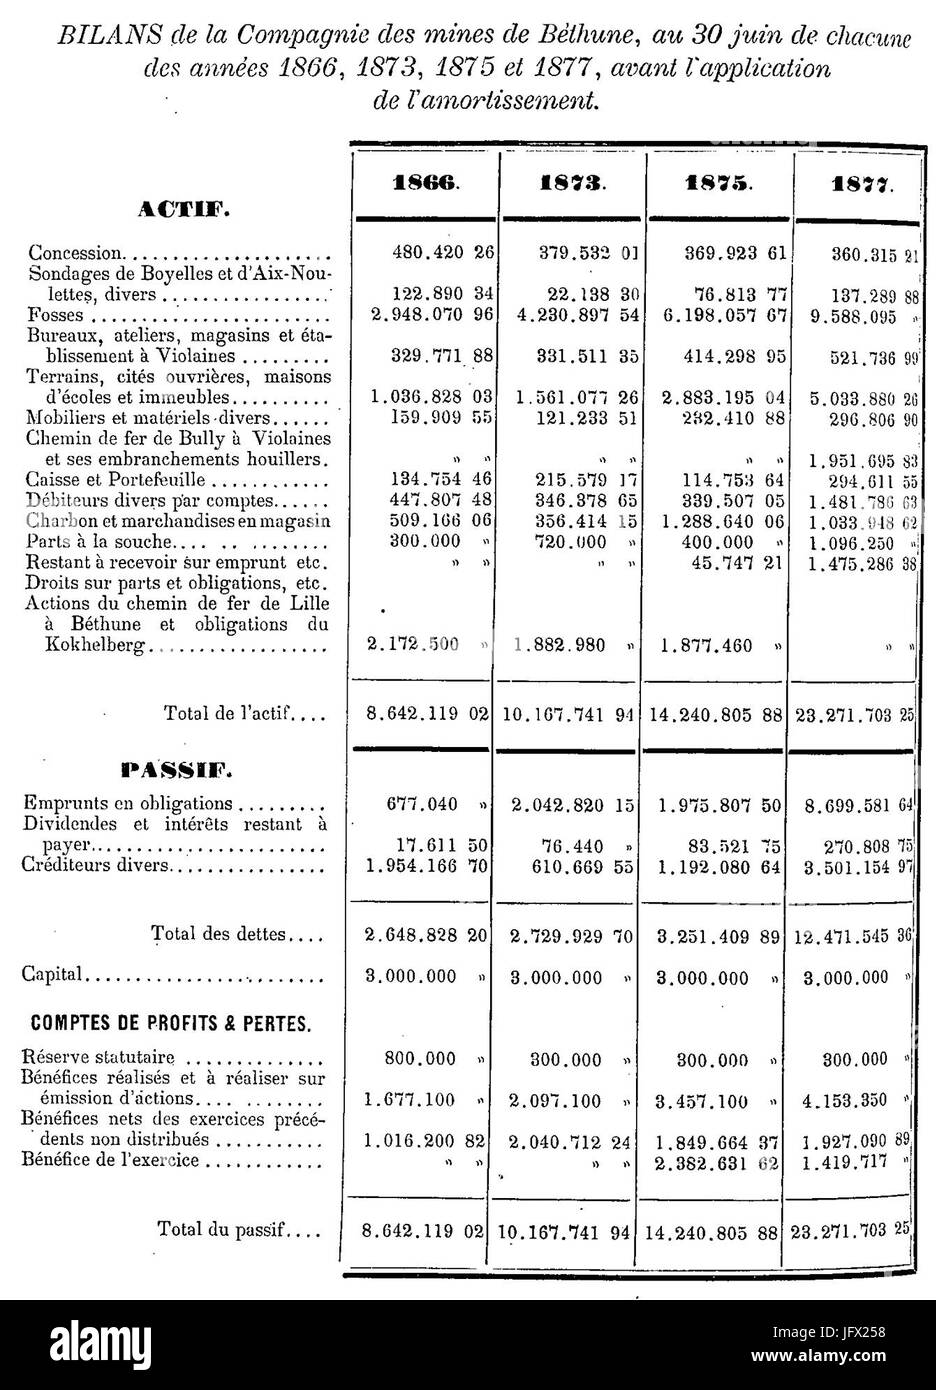 La compagnie des Mines de Béthune - Bilans au 30 juin des années 1866, 1873, 1875 et 1877 Foto Stock